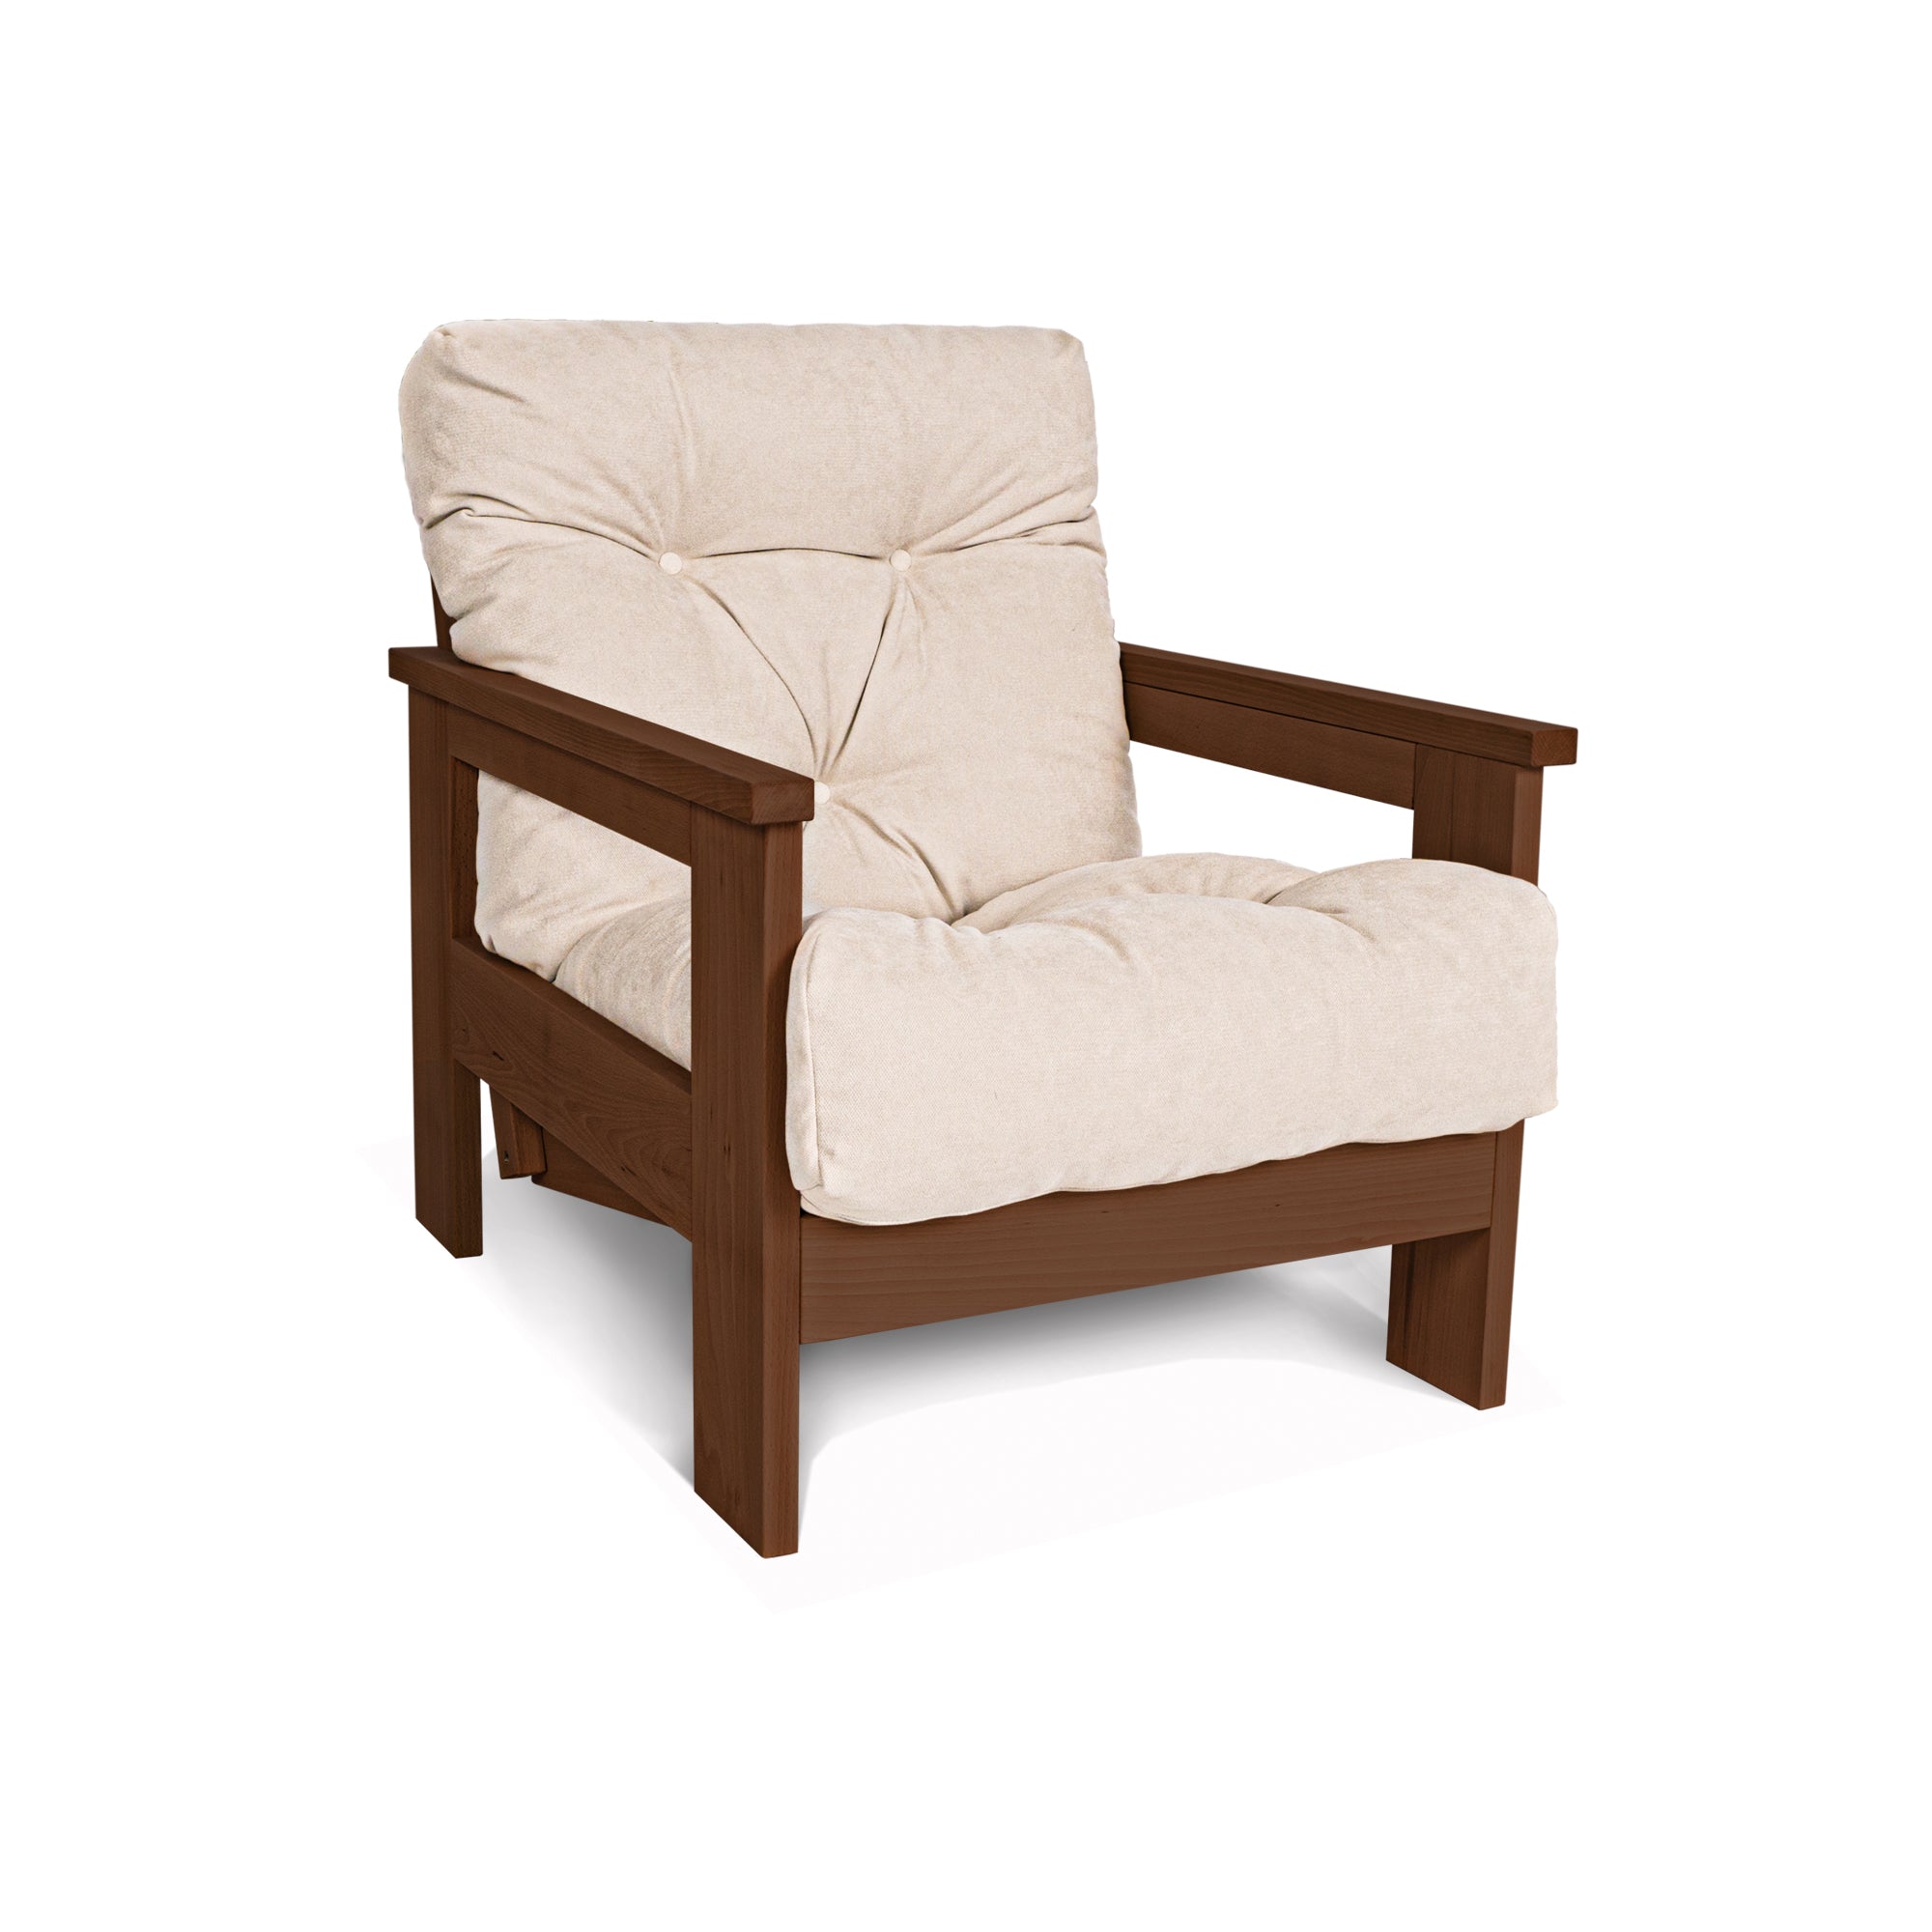 MEXICO Armchair, Beech Wood Frame, Walnut Colour-creamy fabric